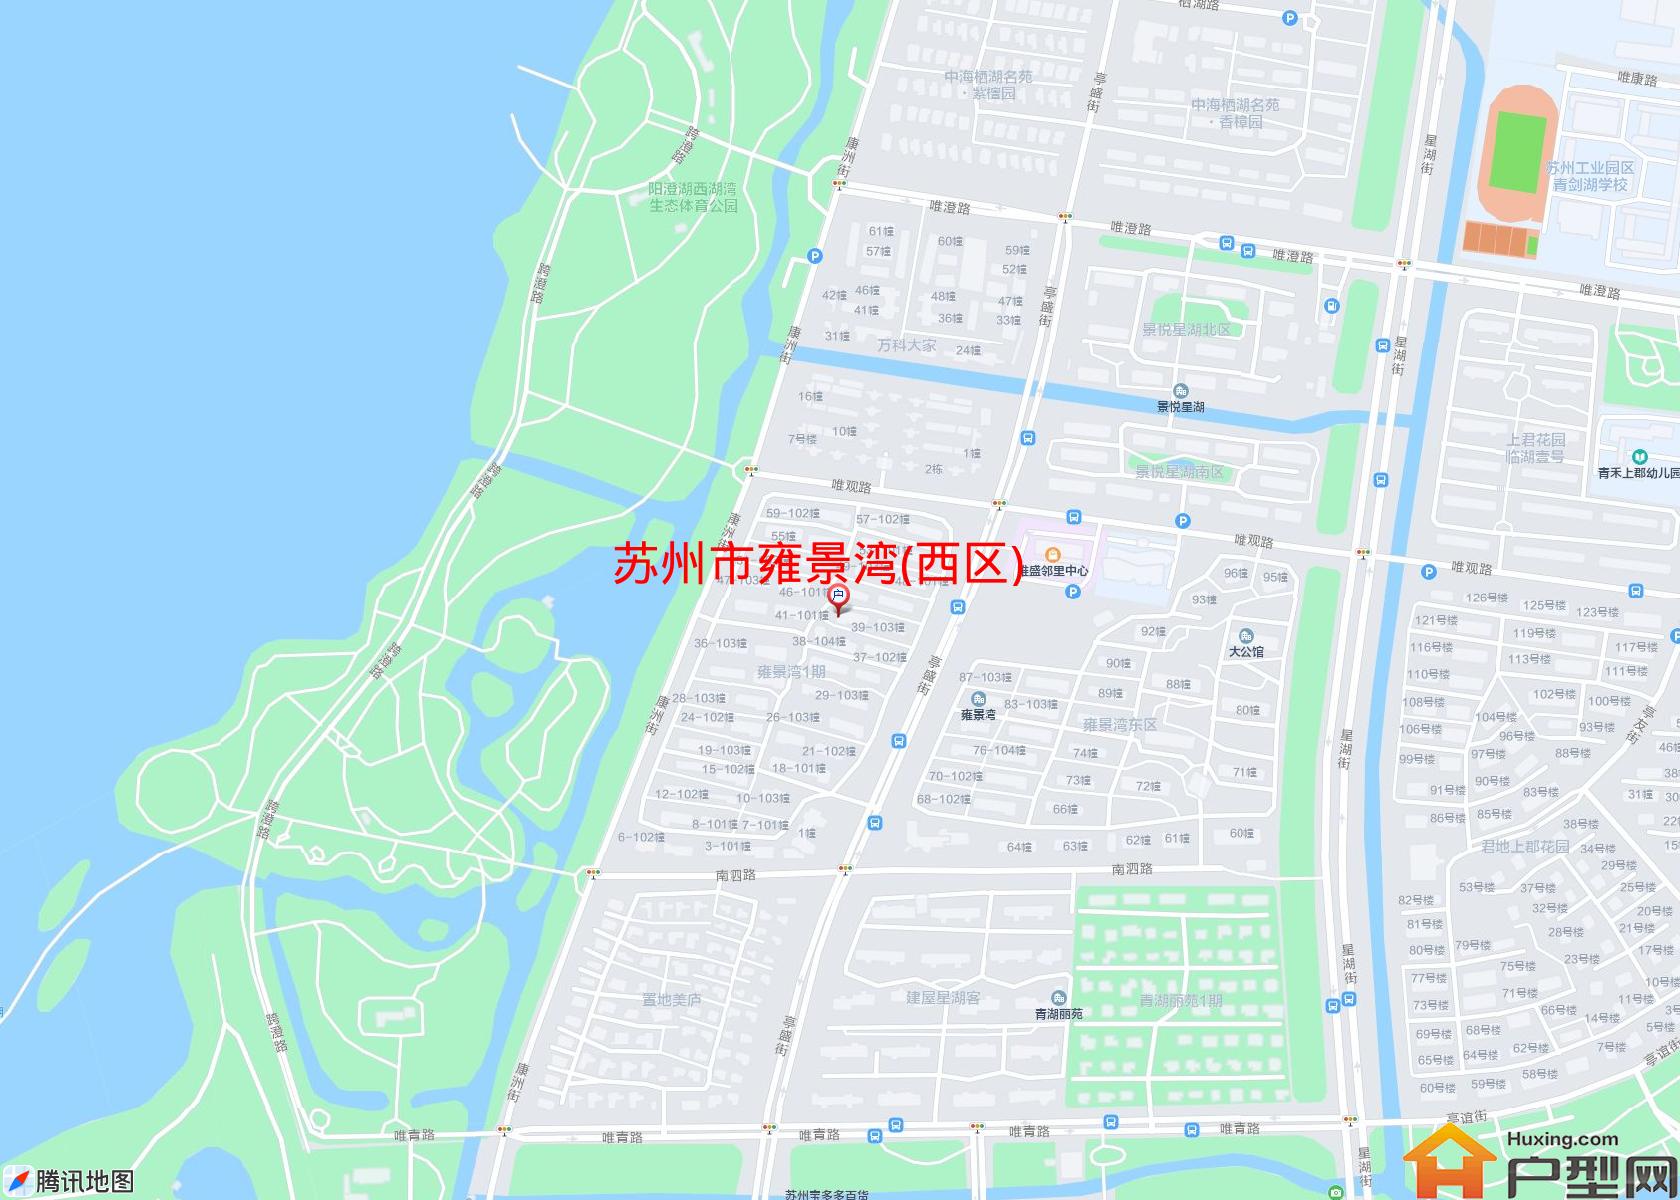 雍景湾(西区)小区 - 户型网